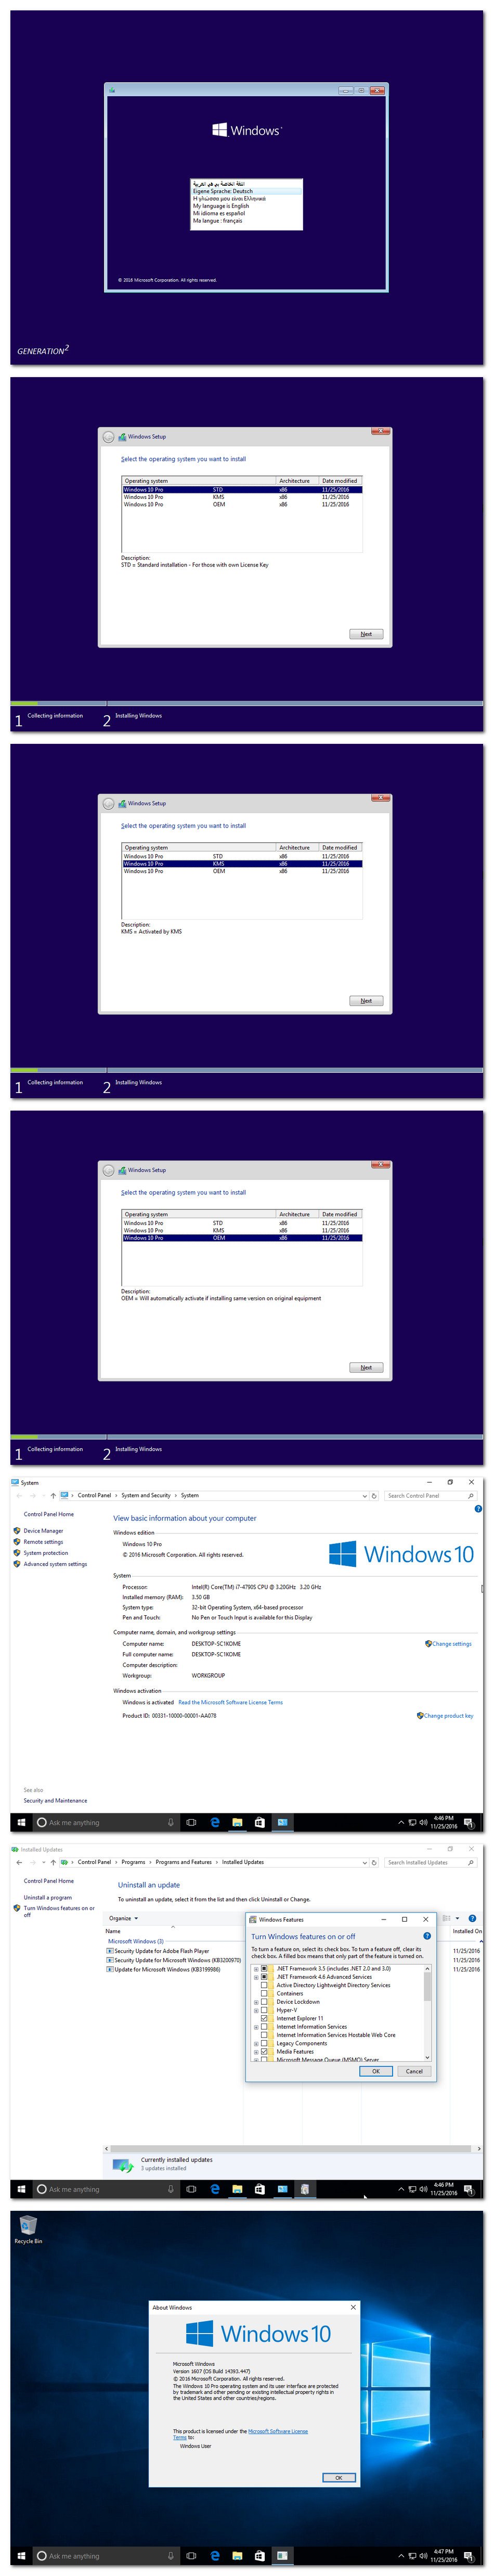 windows 10 pro uefi iso download 64 bit